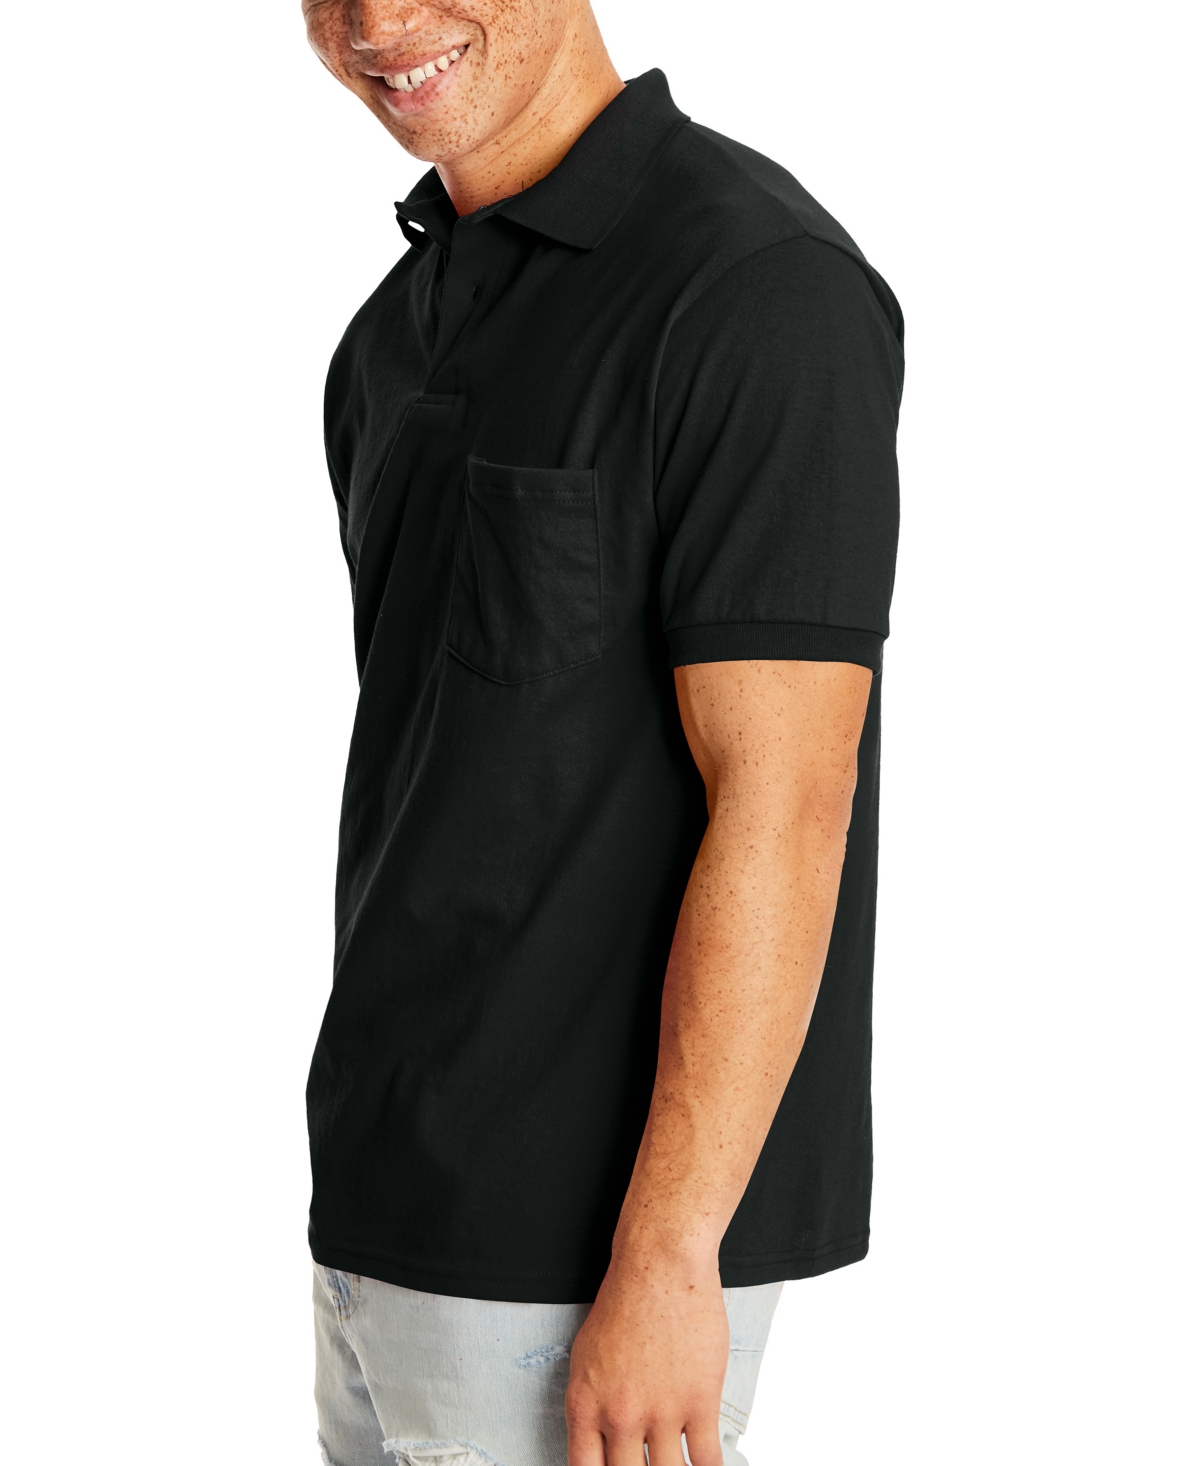 Shop Hanes Ecosmart Men's Pocket Polo Shirt, 2-pack In Black